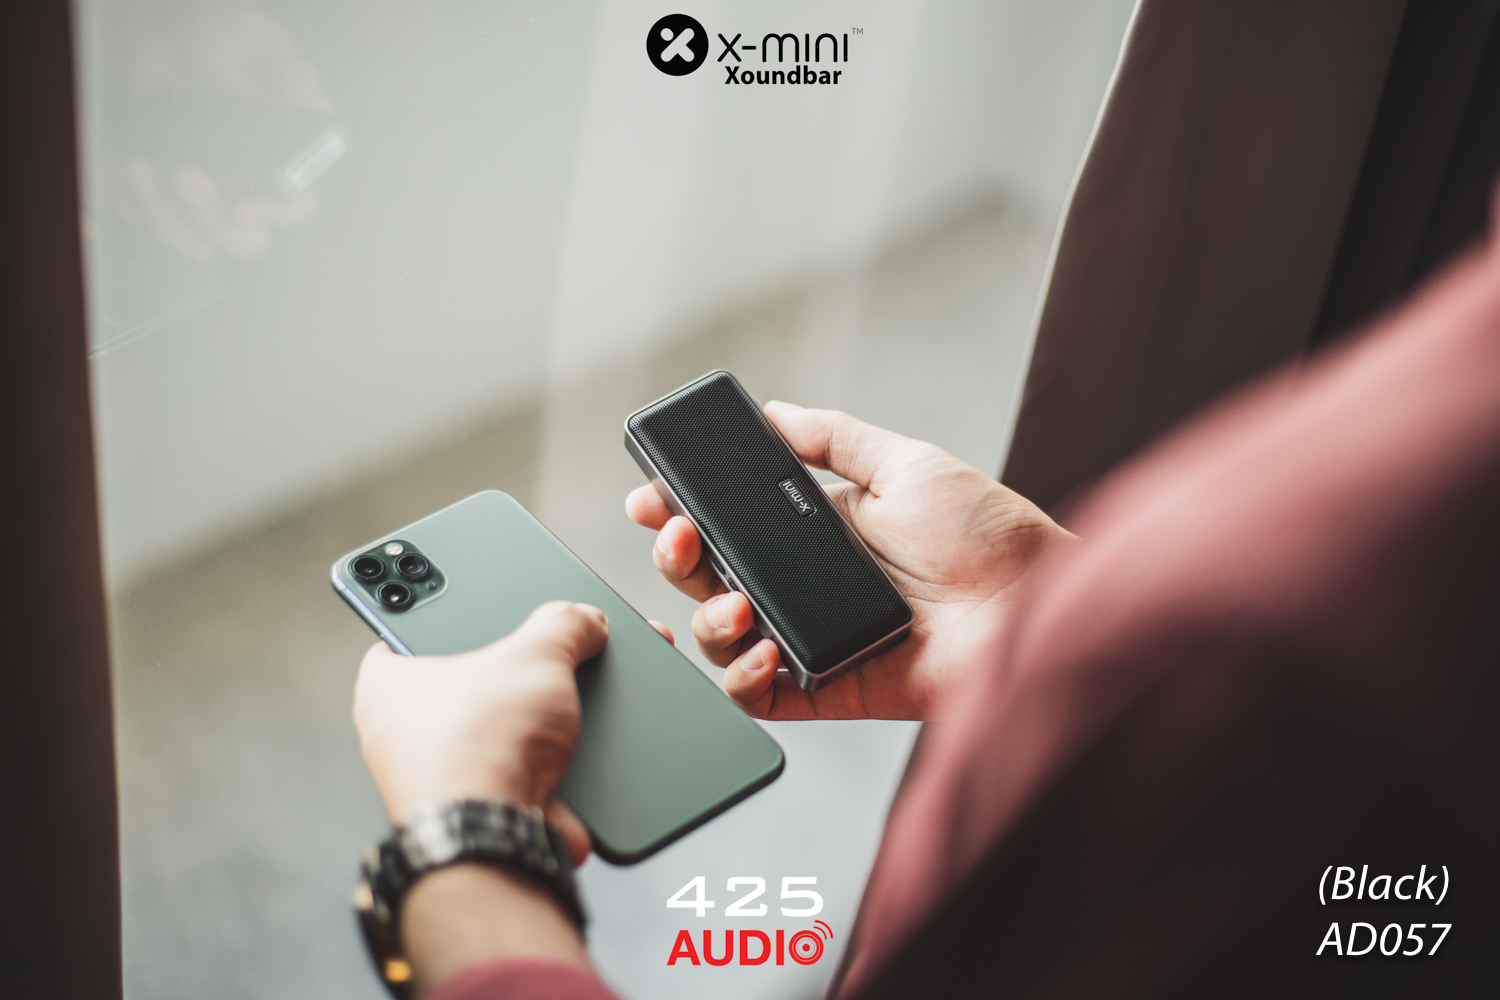 X-mini Xoundbar,X-mini,best bluetooth speaker 2019,best small bluetooth speaker 2019,ลำโพงบลูทูธเสียงดี,ลำโพงบลูทูธพกพา,ลำโพงกันน้ำ,Wireless speaker